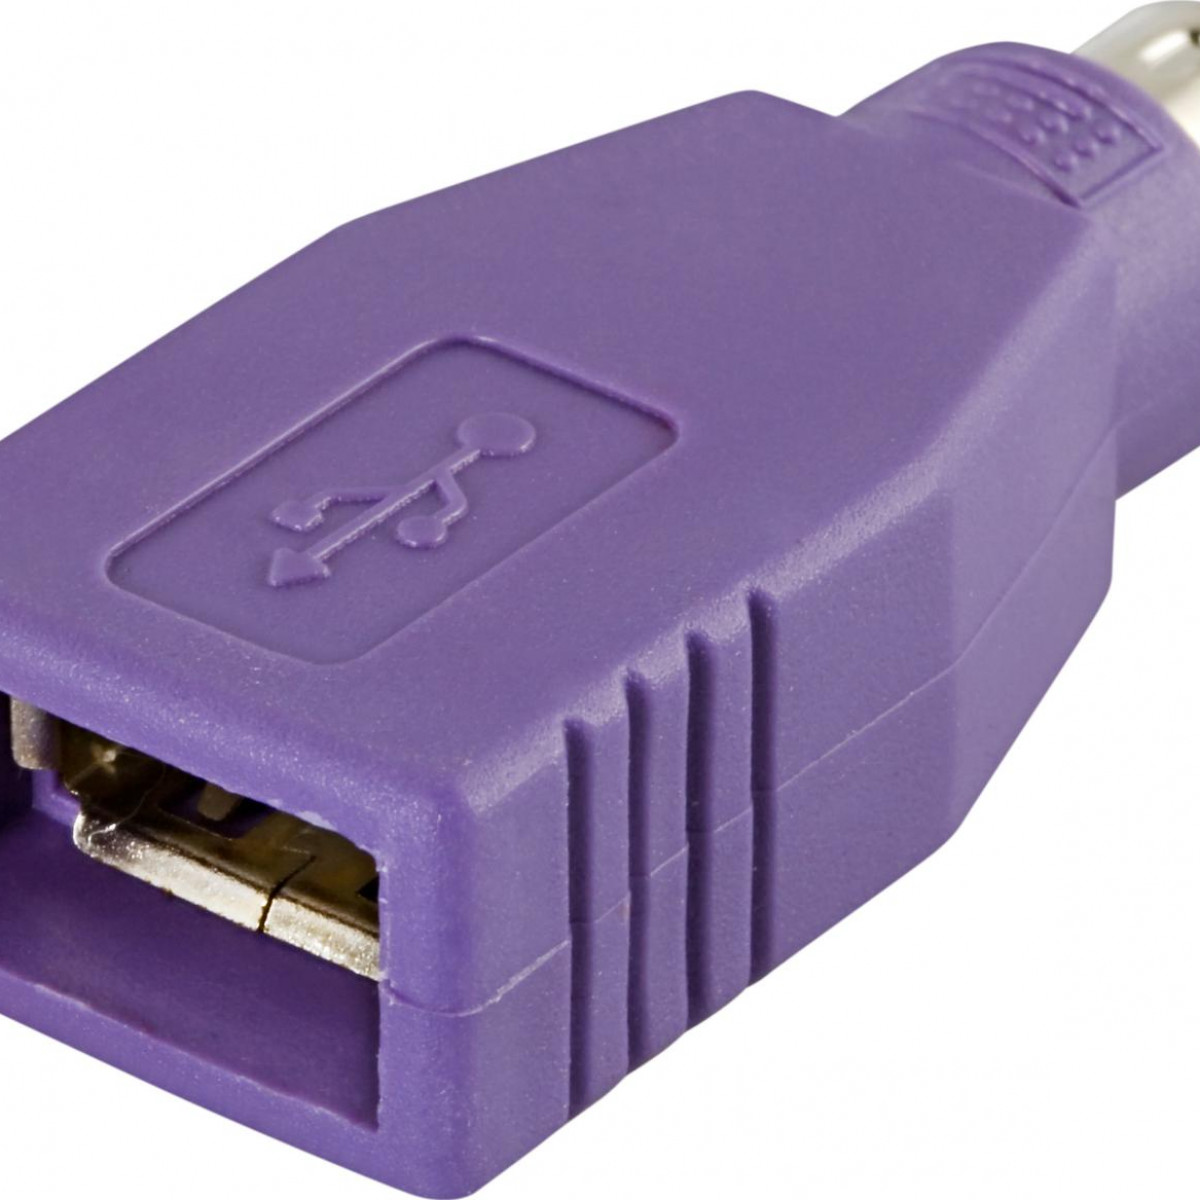 DELTACO für PS Mäuse Adapter 2 Tastaturen DELTACO für USB-Buchse / & ha Adapter